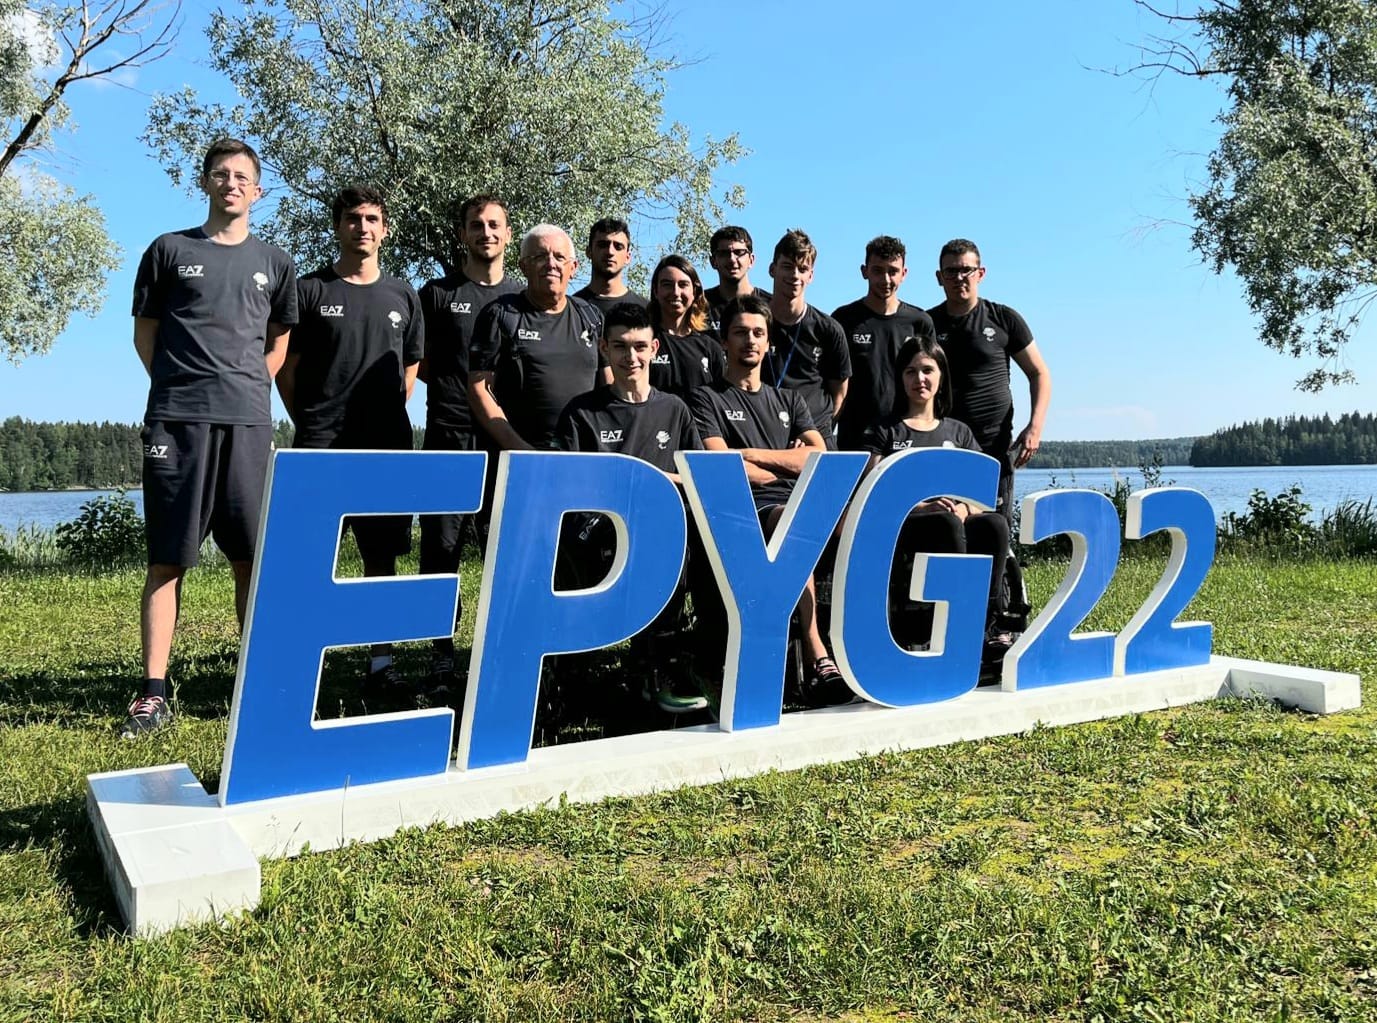 EPYG 2022 la Nazionale azzurra